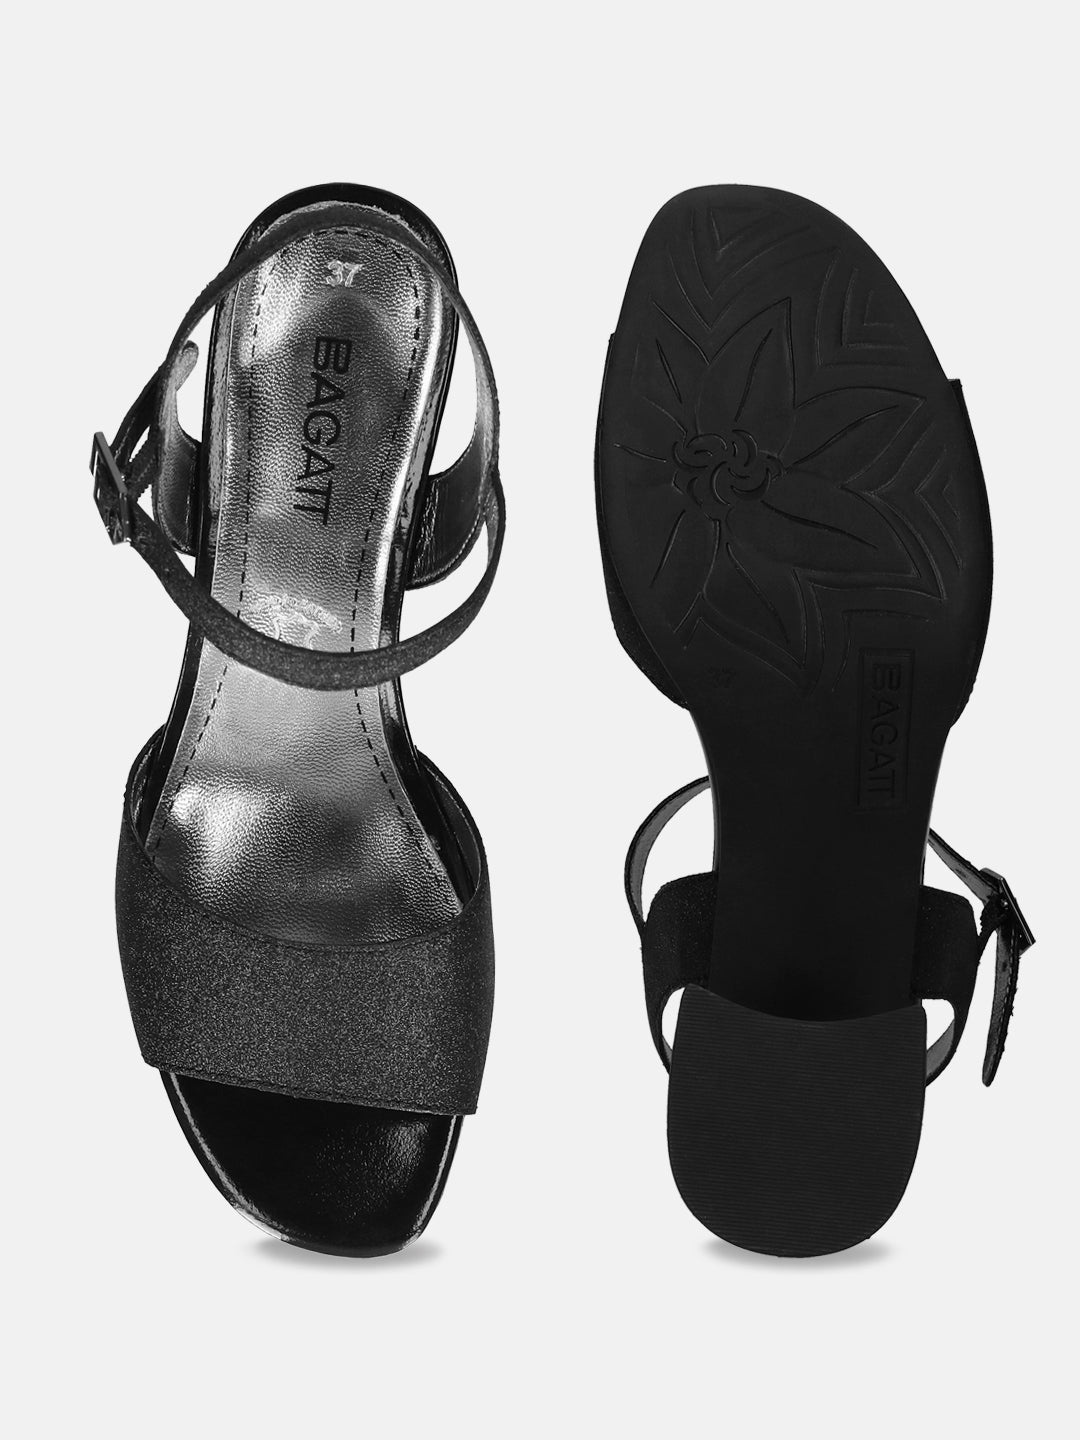 Vanita Black Ankle Strap Heels